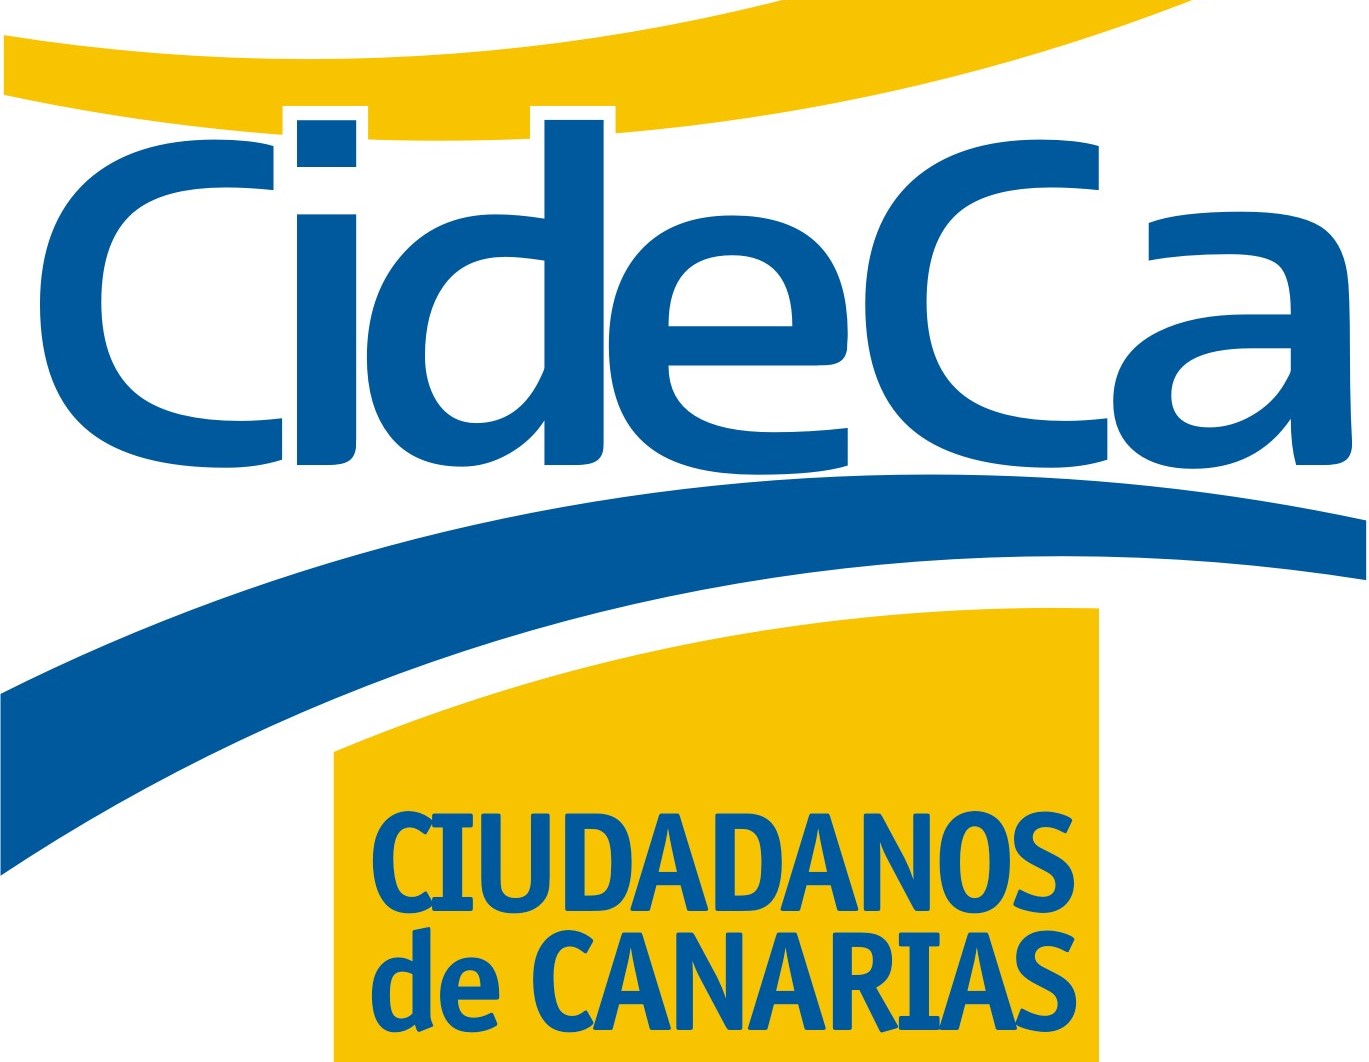 Ciudadanos de Canarias (CideCa)